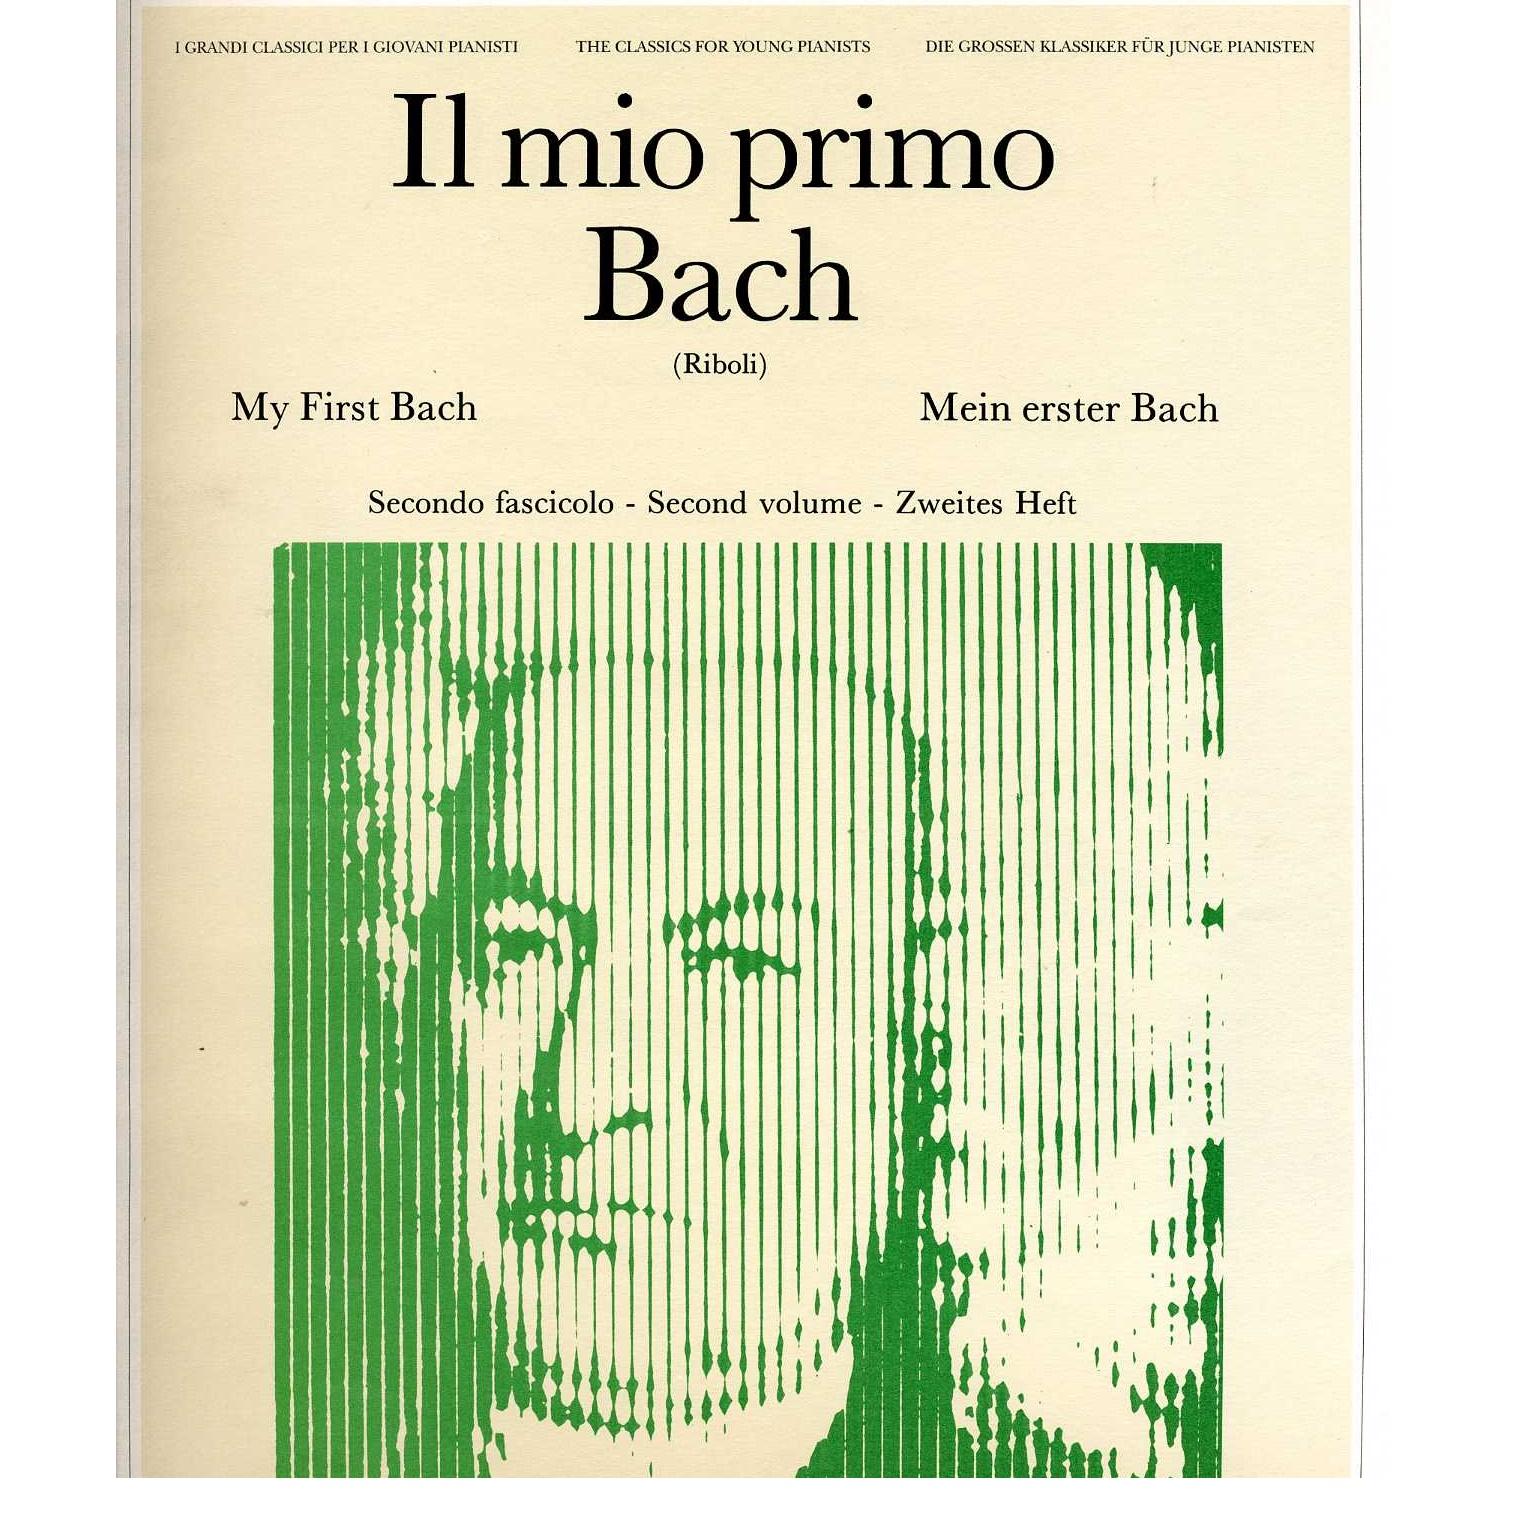 Il mio primo Bach (Riboli) Secondo fascicolo - Ricordi